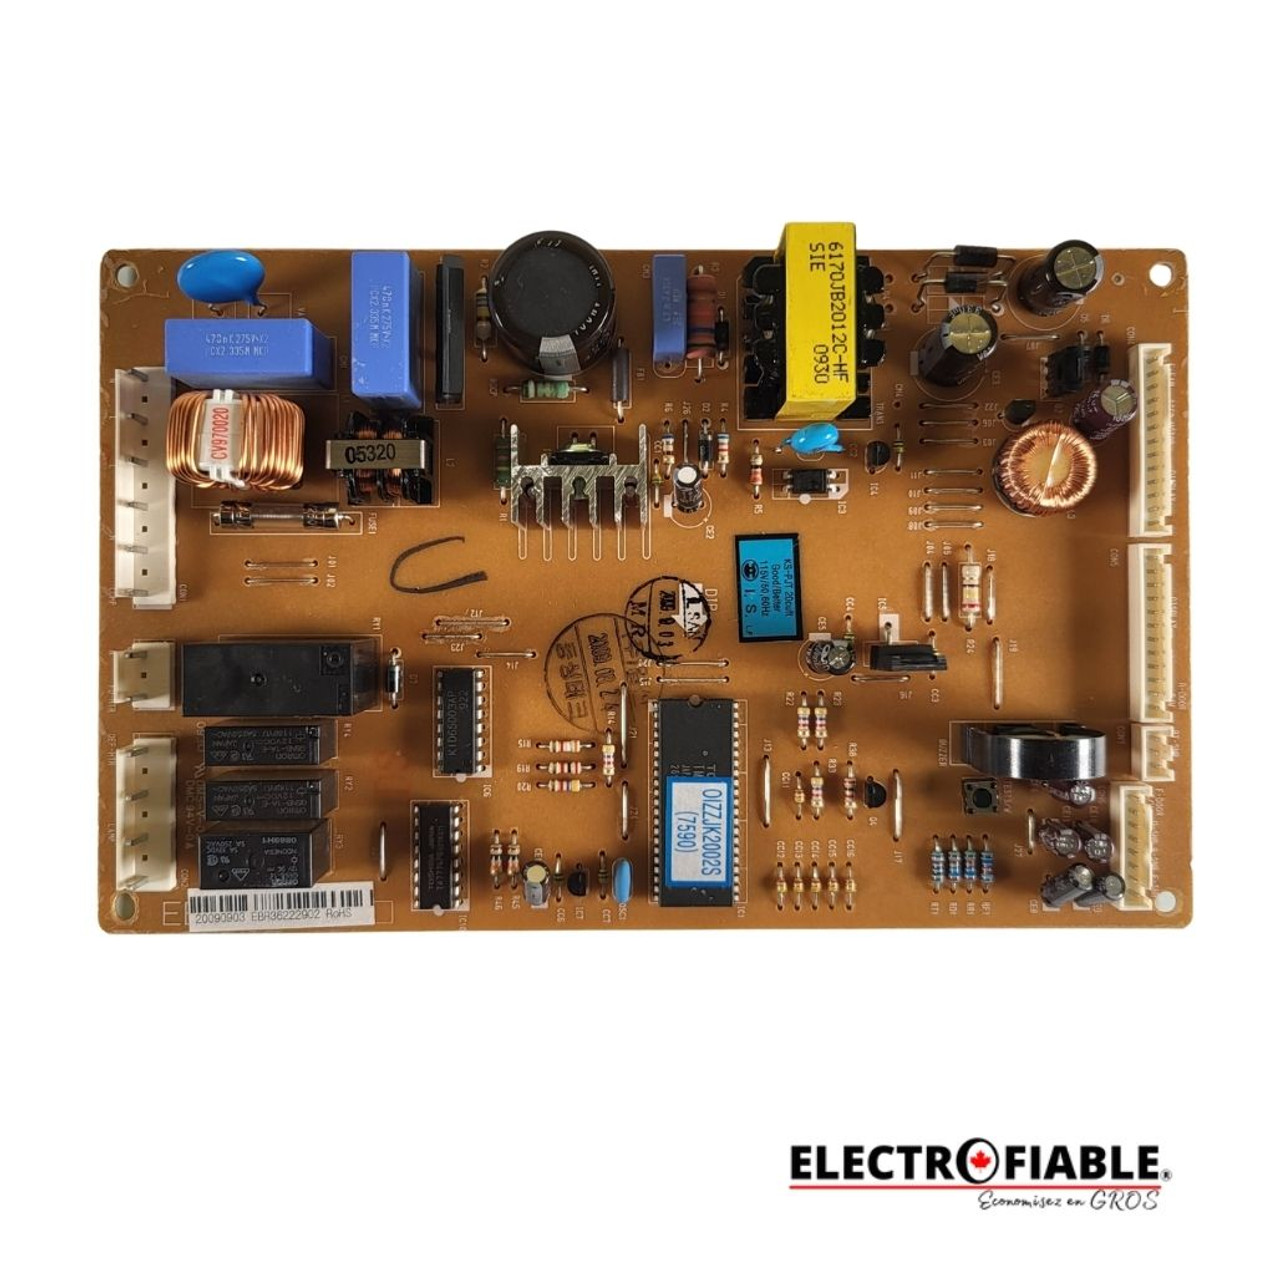 EBR36222902 Control board for LG refrigerator